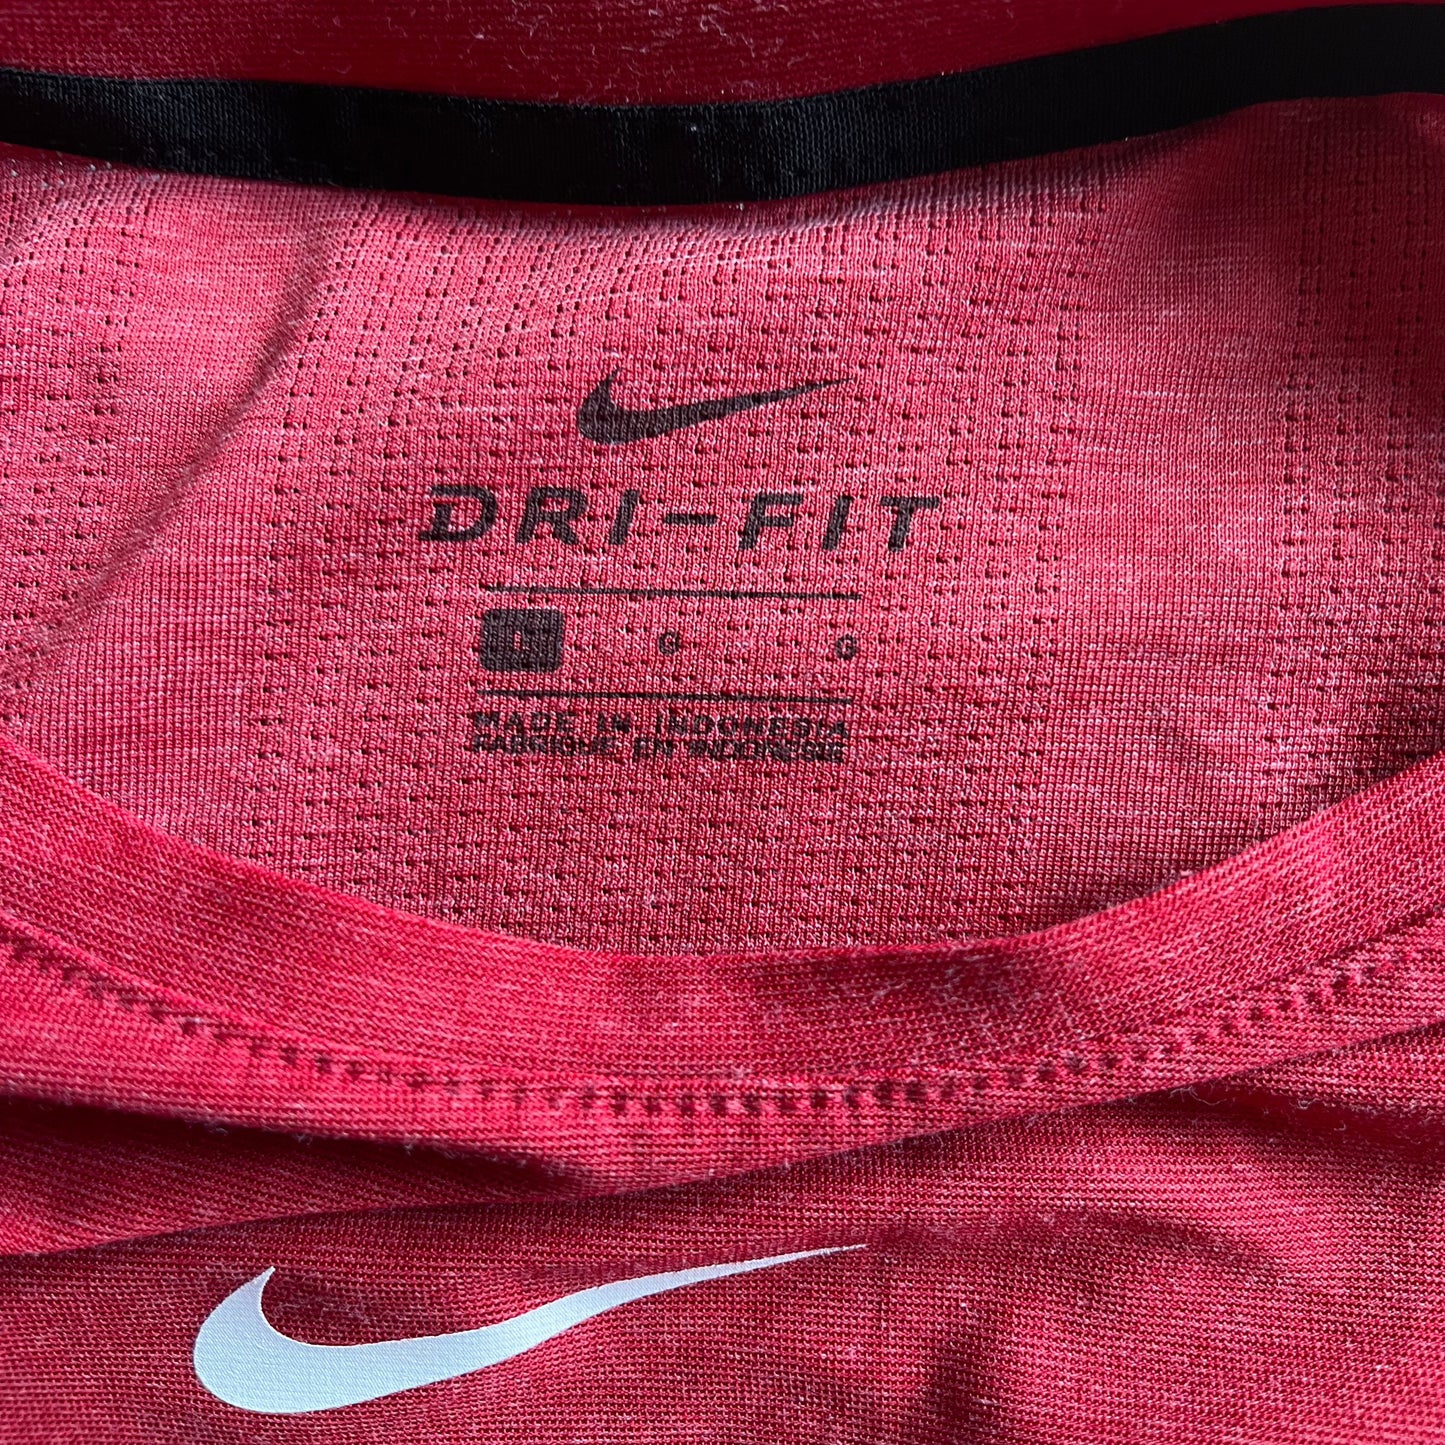 University of Alabama - Nike Dr-Fit (Large)